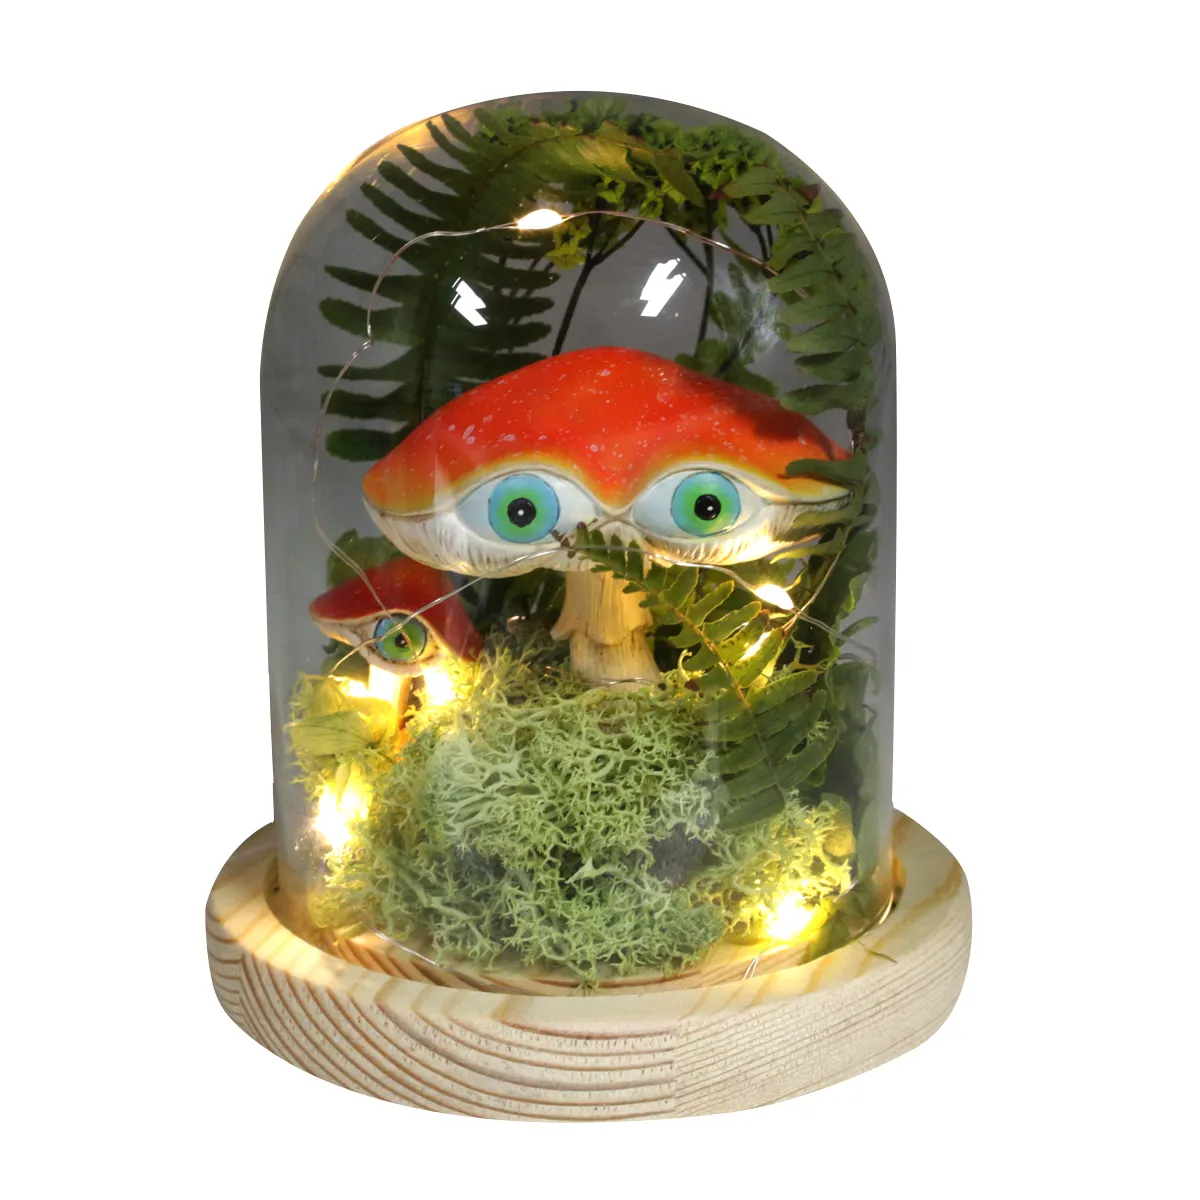 كرة زجاجية على شكل فطر لطيف مخصص ومضحك مع قاعدة خشبية وضوء led